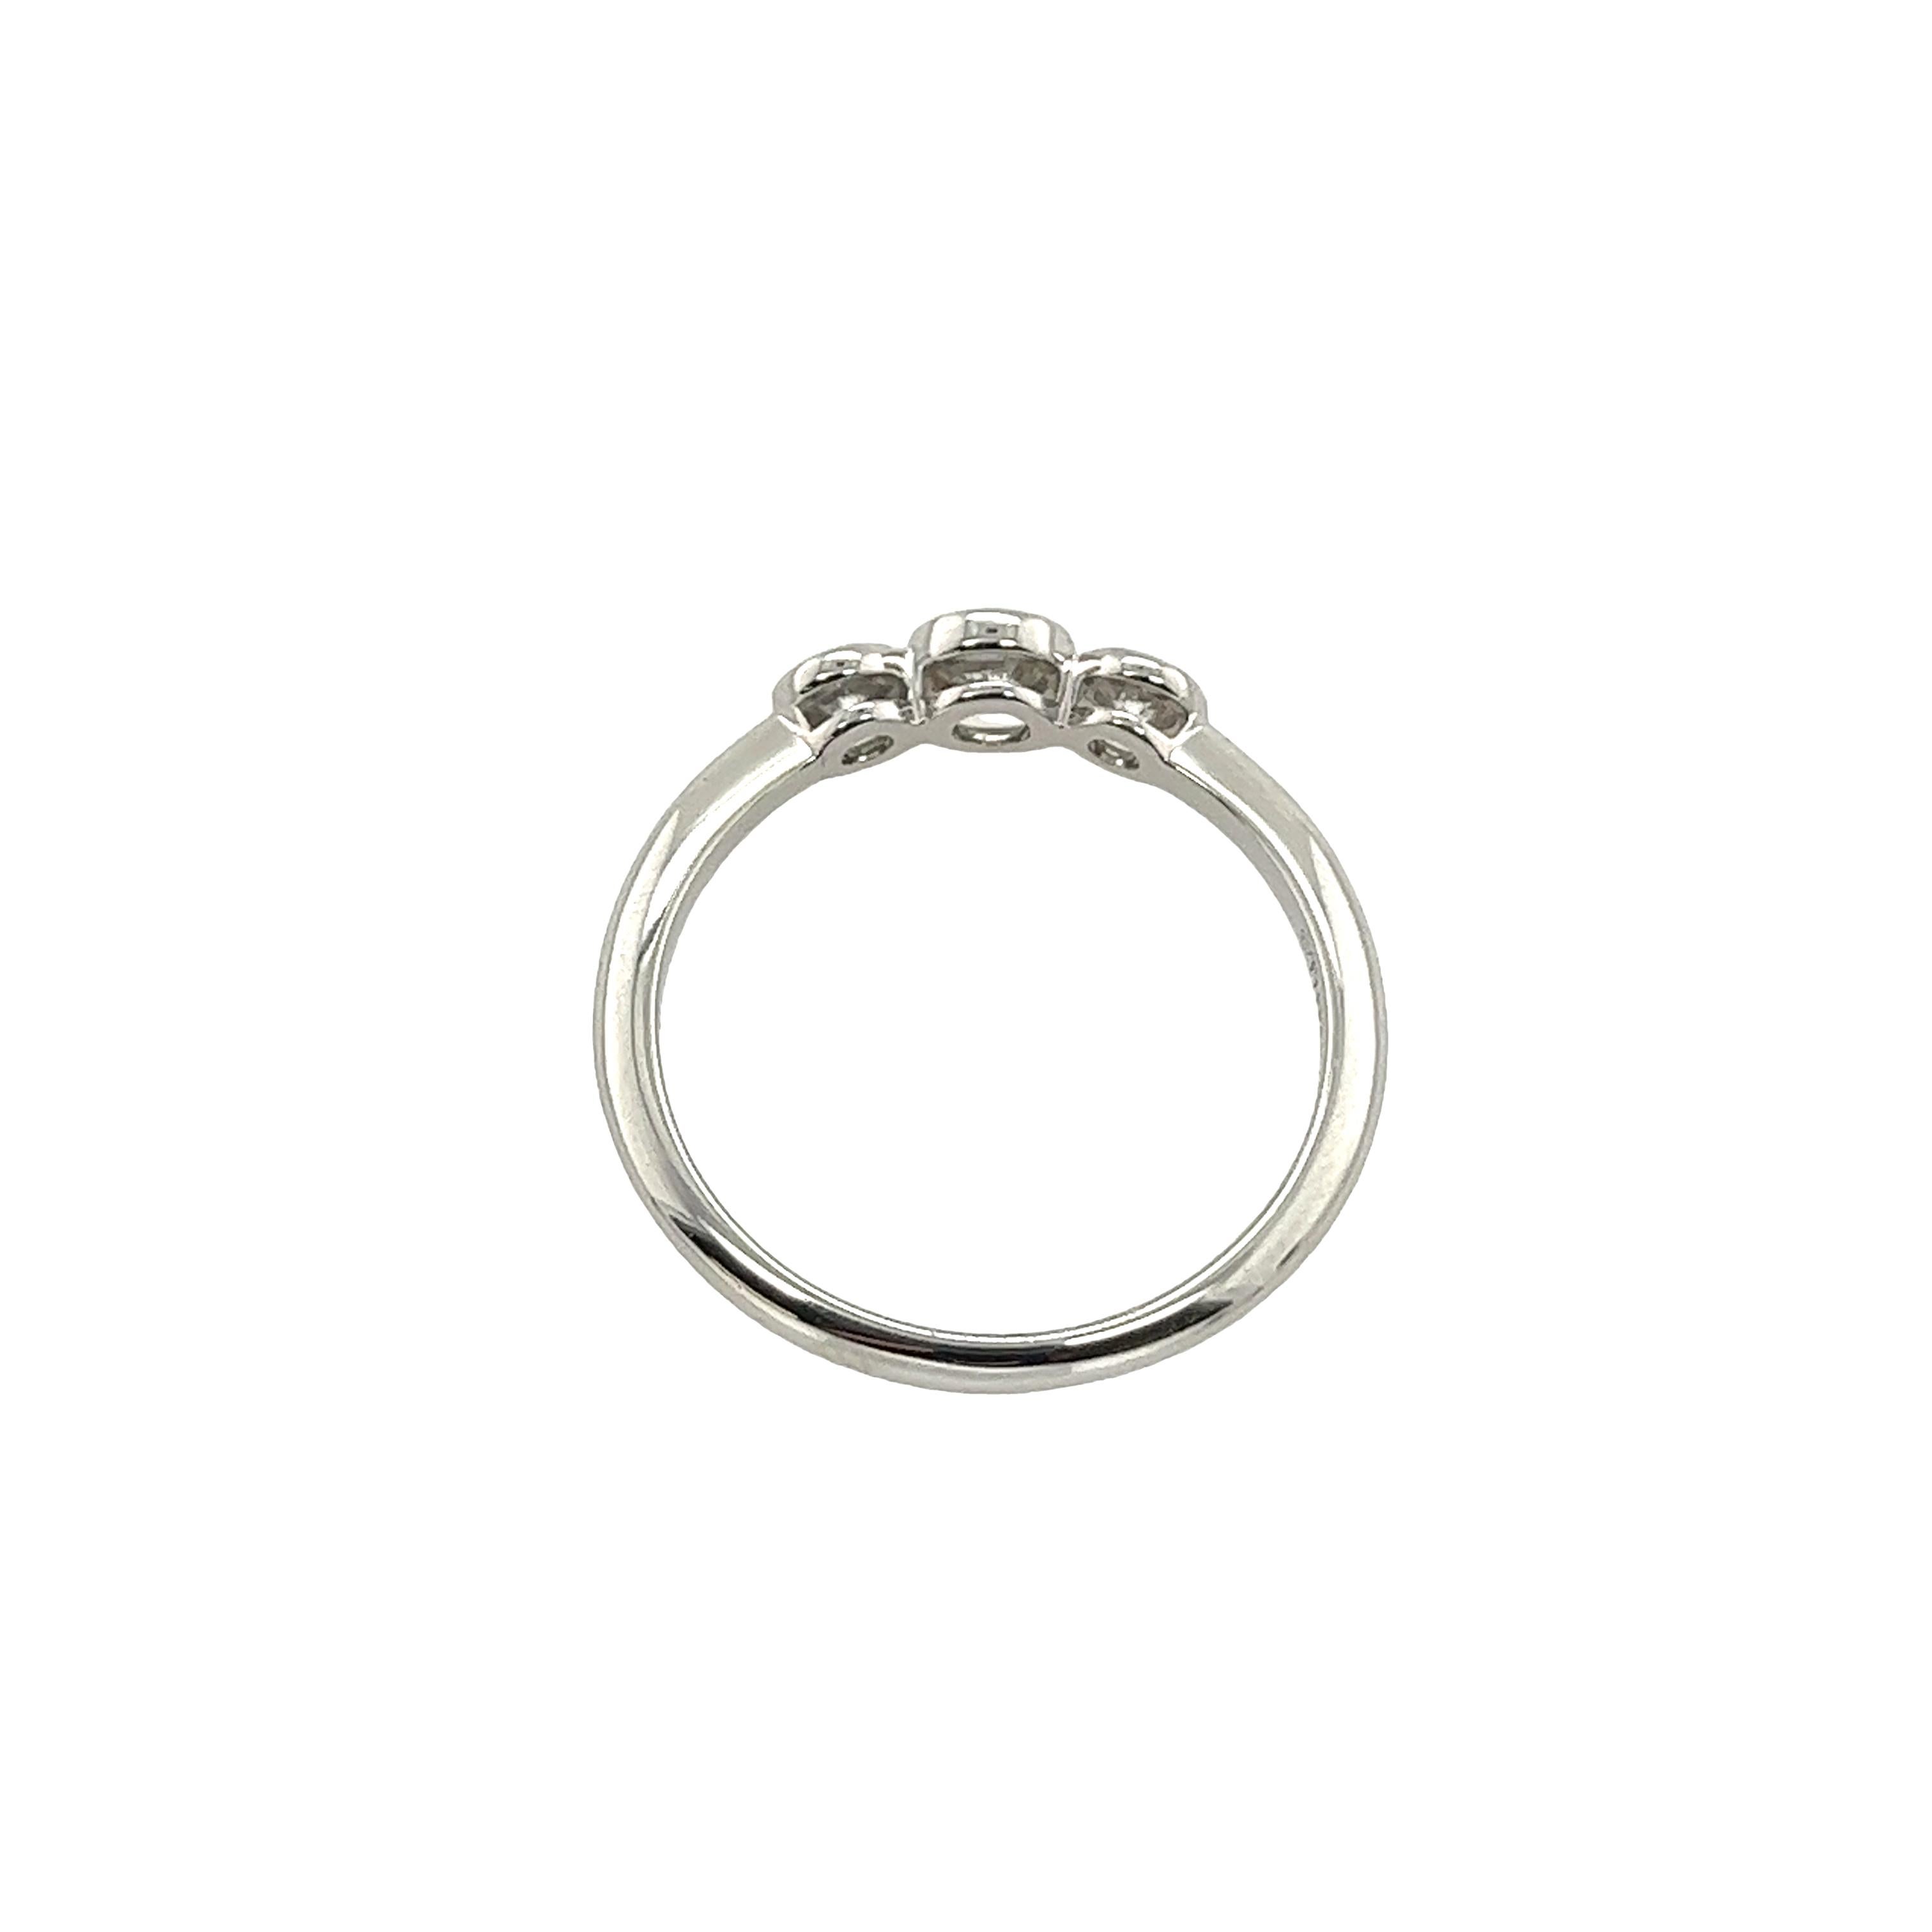 Dieser Ring besteht aus drei exquisiten, in Platin gefassten Diamanten, die in der Regel durch eine Lünettenfassung sicher gehalten werden. Die Lünettenfassung verleiht dem klassischen Dreistein-Ringdesign einen modernen und eleganten